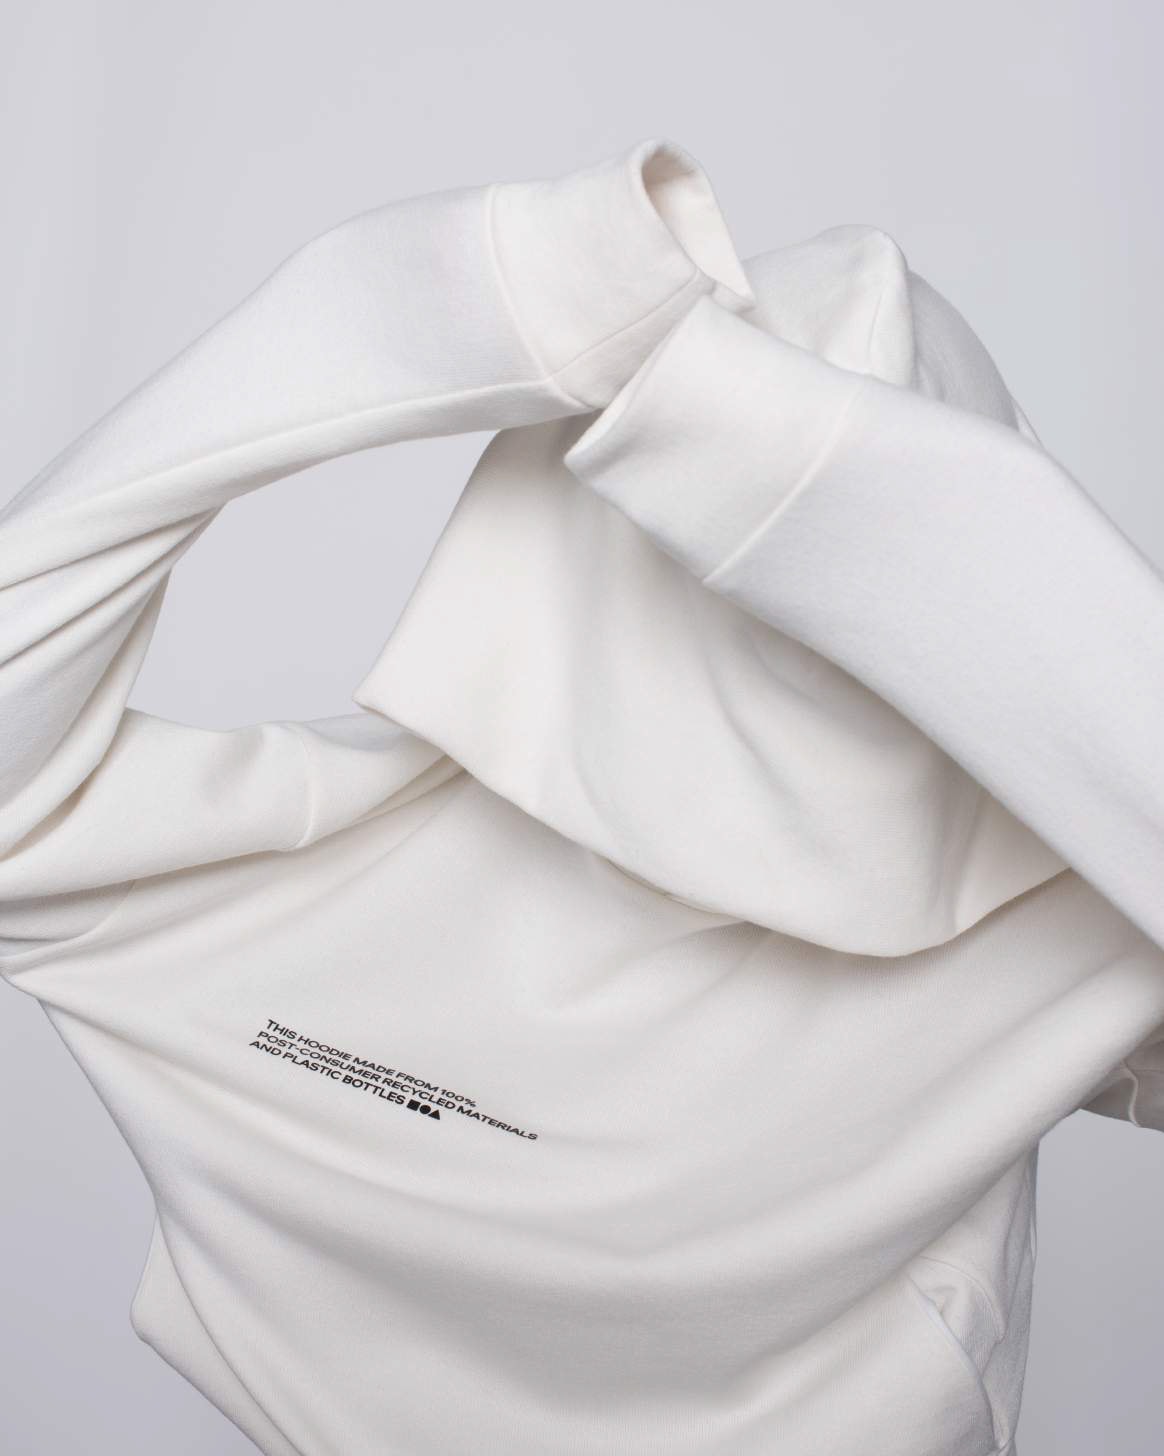 pangaia ethical sustainable brand minimalists pharrell puffer jackets zero waste